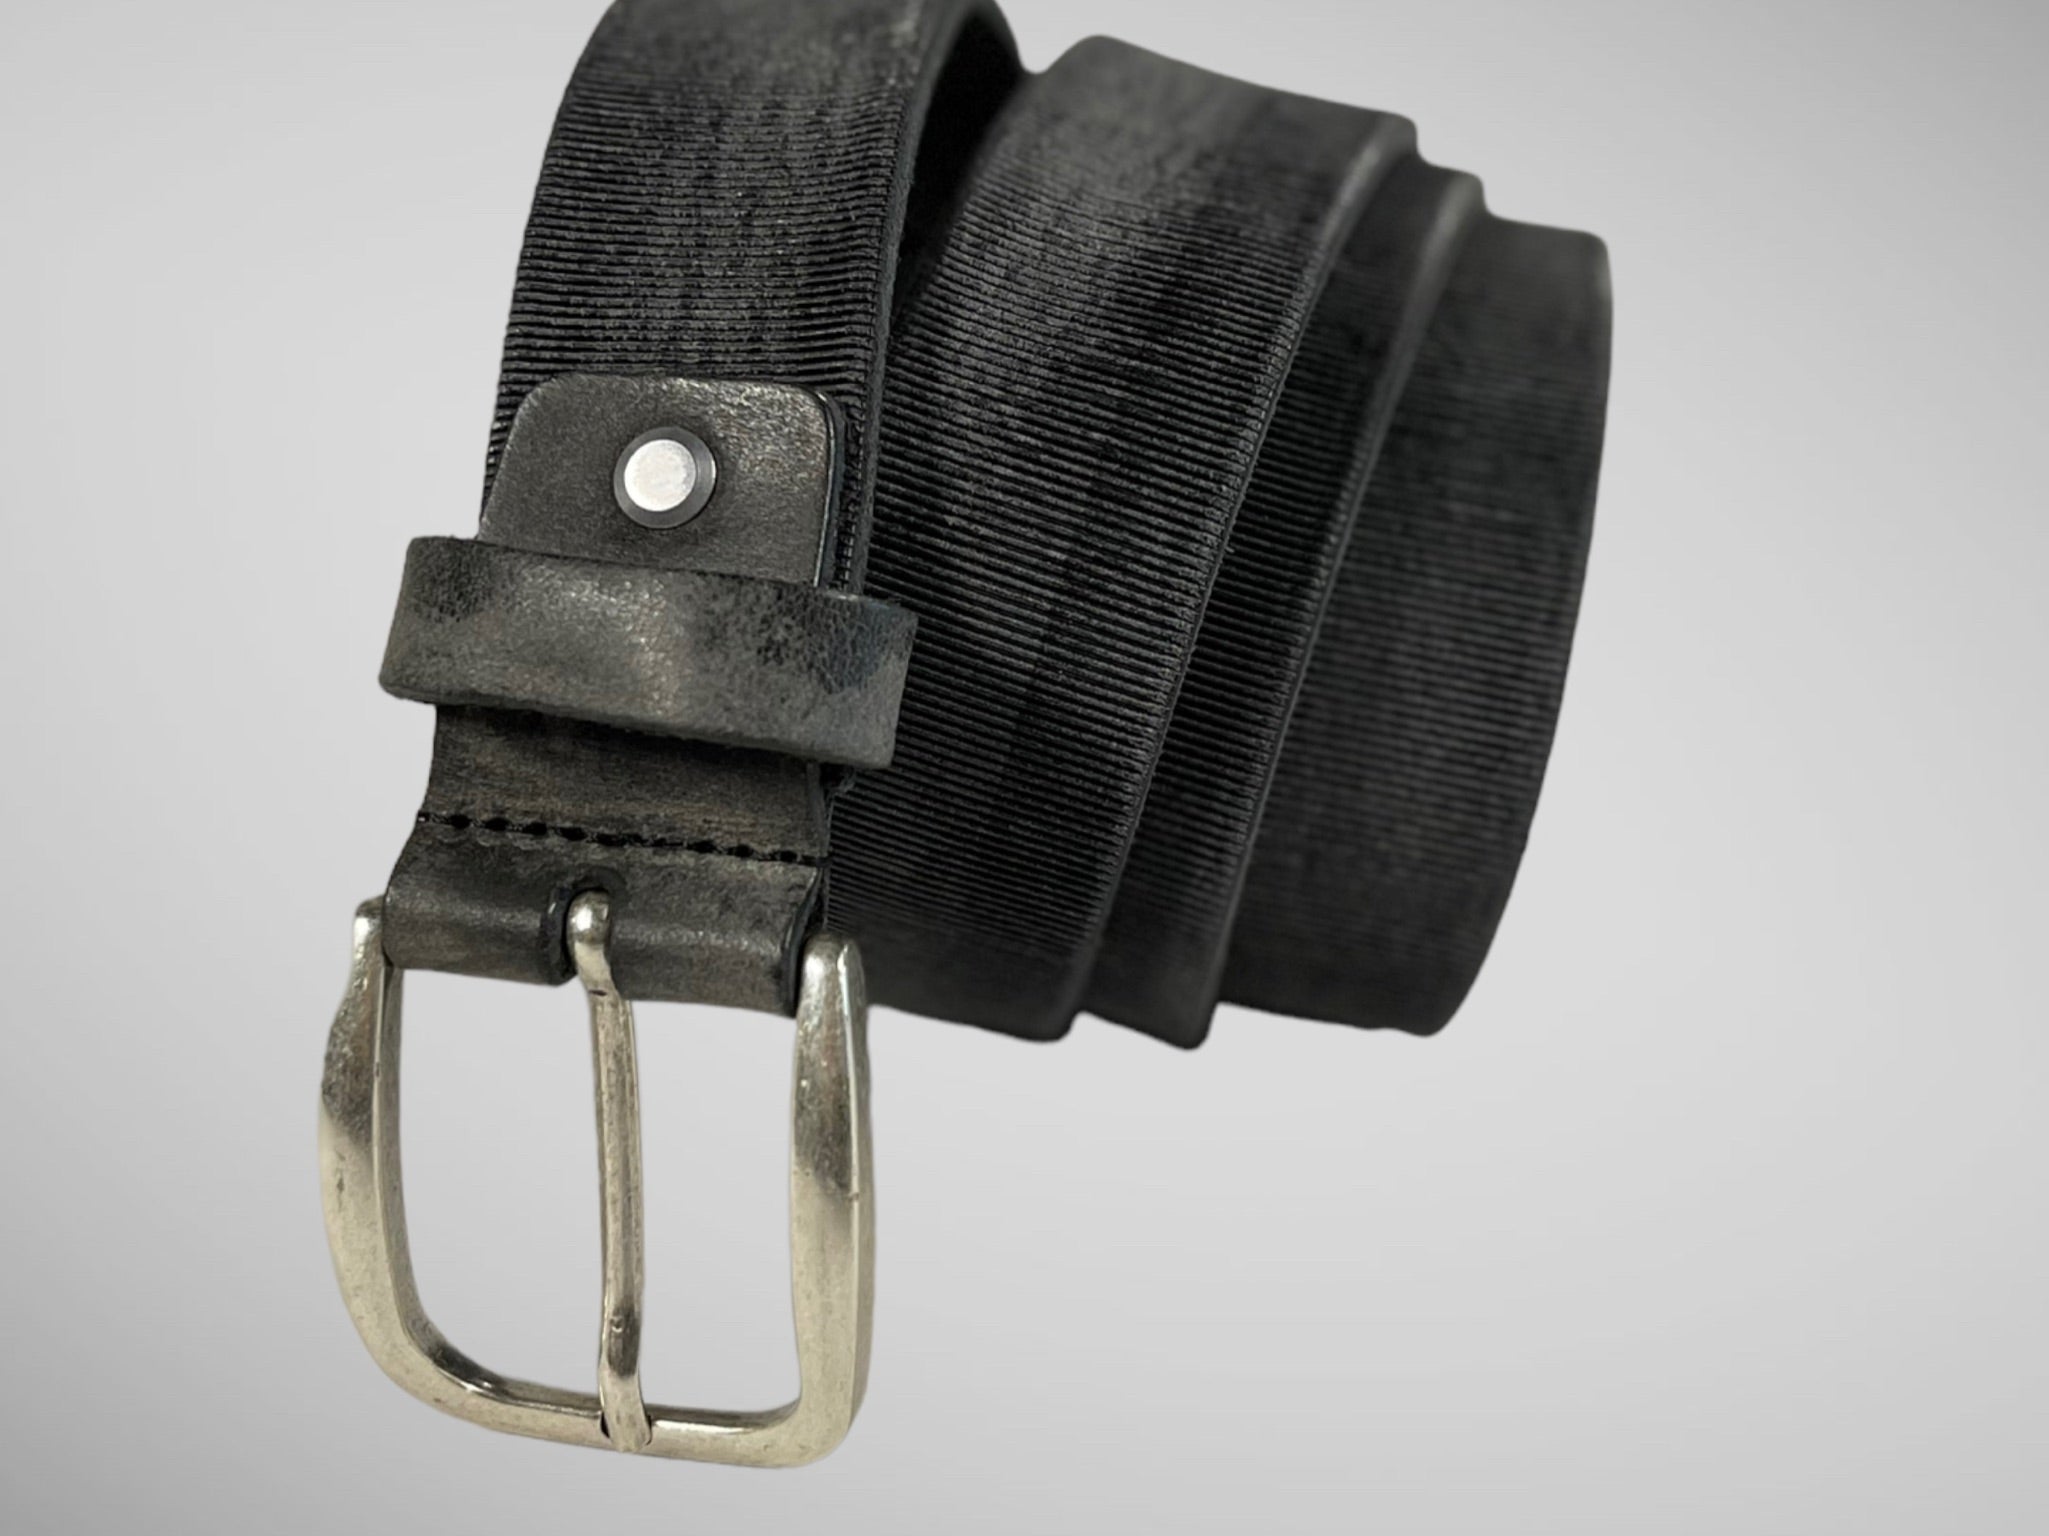 Cintura 035mm con procedimento di ingrassaggio. lavata e stropicciata a mano con stampa a taglio vivo